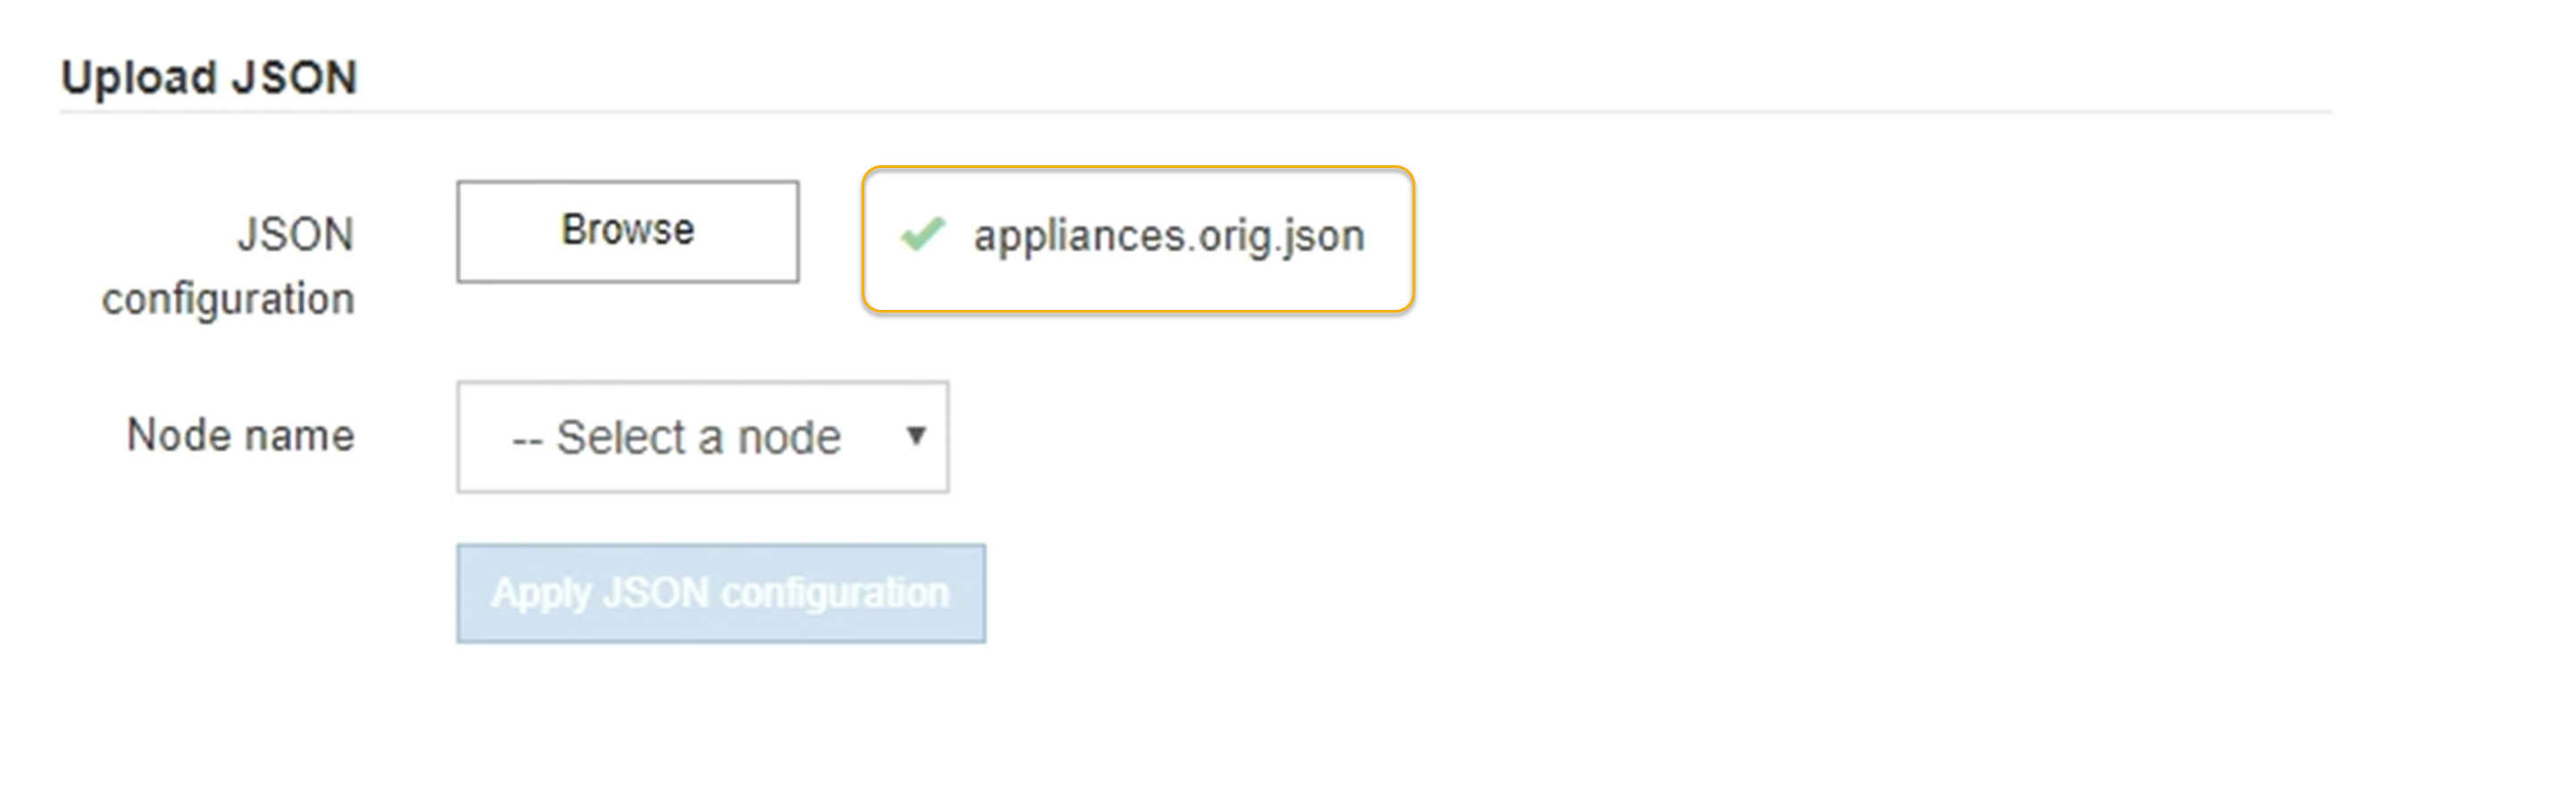 Mettez à jour la configuration de l'appliance JSON chargée